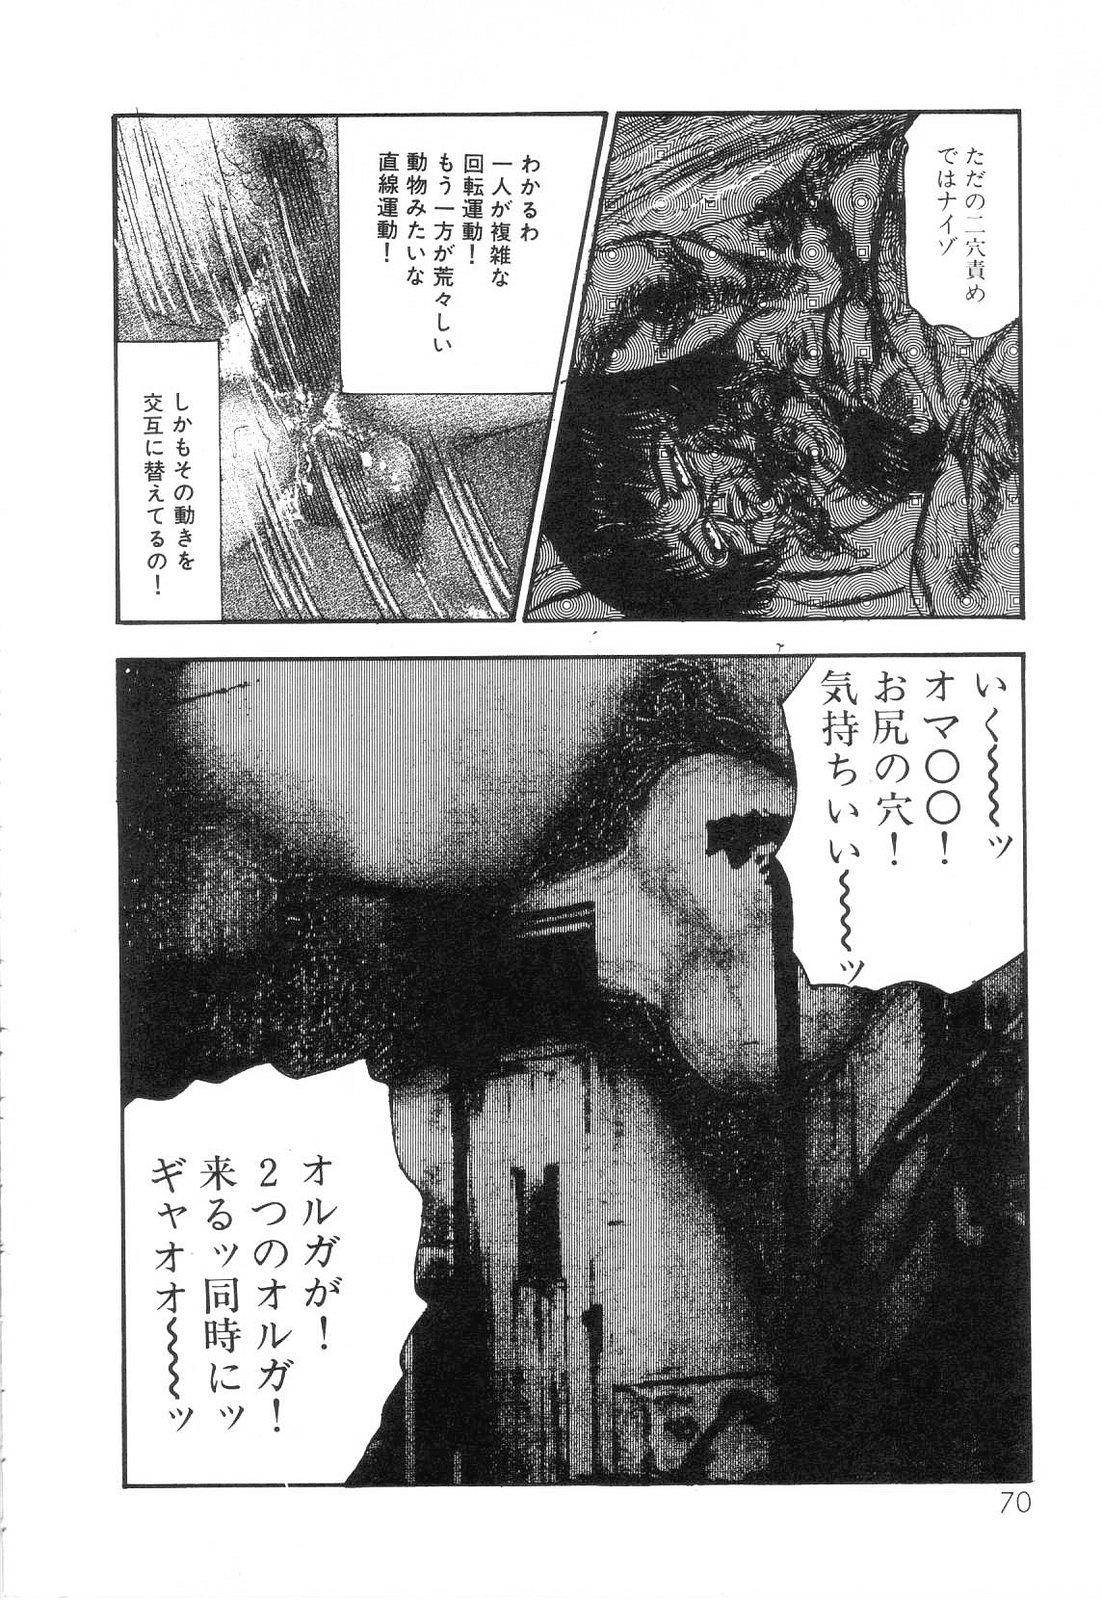 Shiro no Mokushiroku Vol. 6 - Juuai Erika no Shou 71